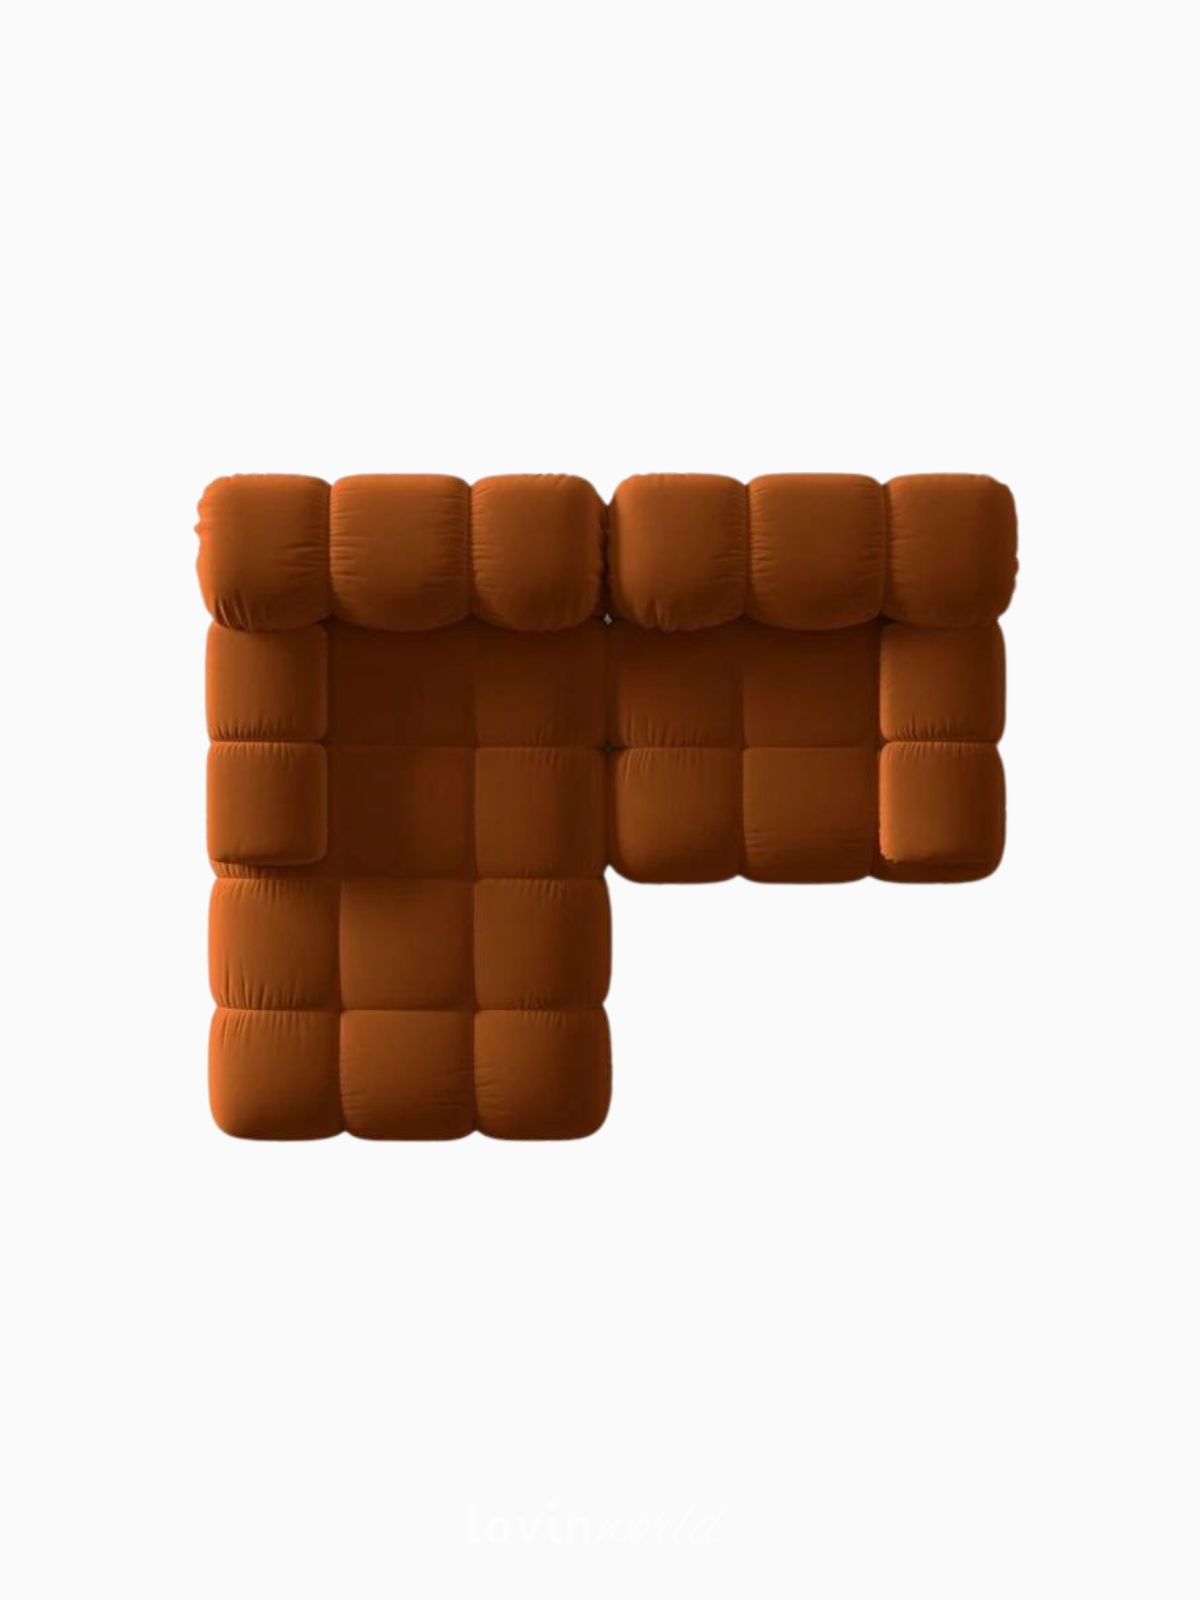 Divano modulare 3 posti Bellis in velluto, colore arancione-5